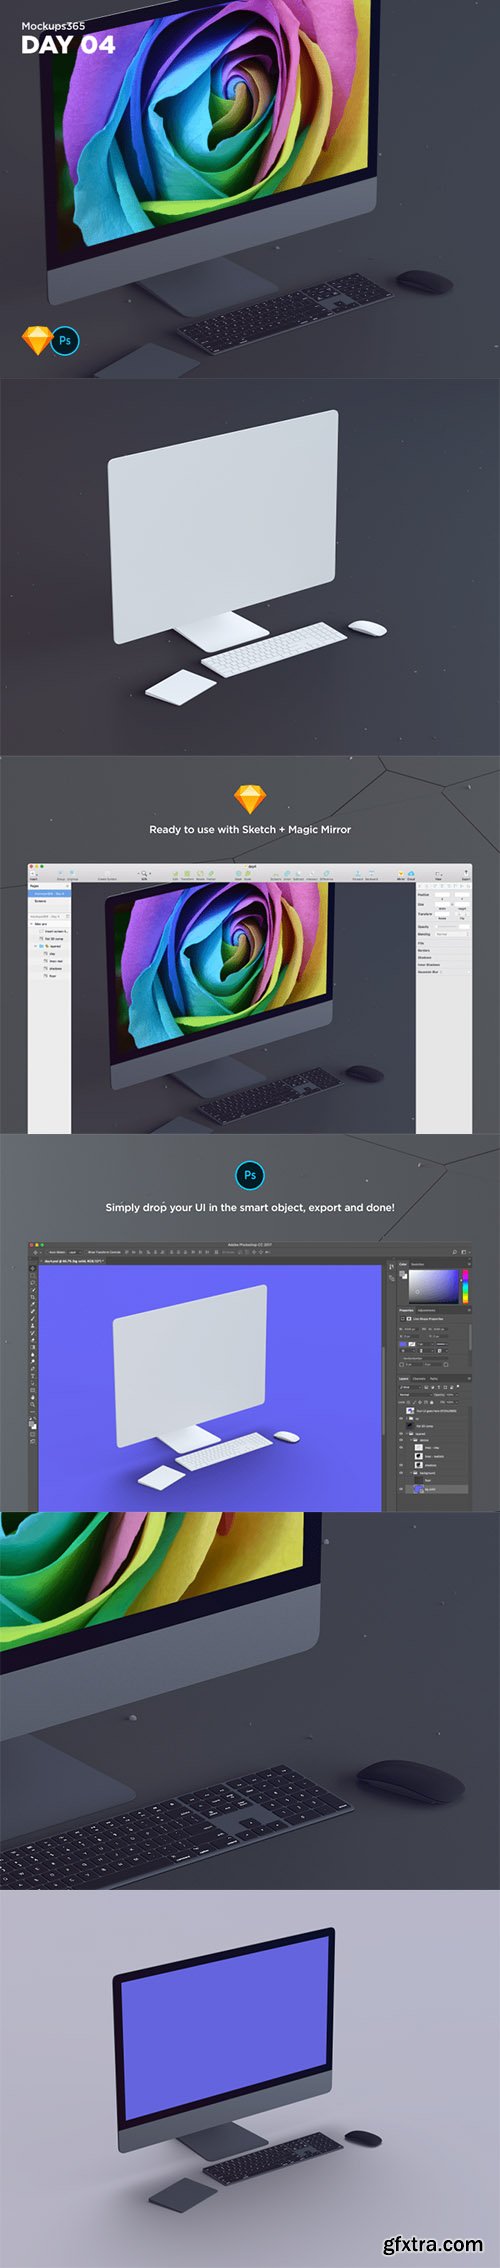 Mockups365: Day 4 - iMac Pro perspective mockups for Sketch & Photoshop 4K